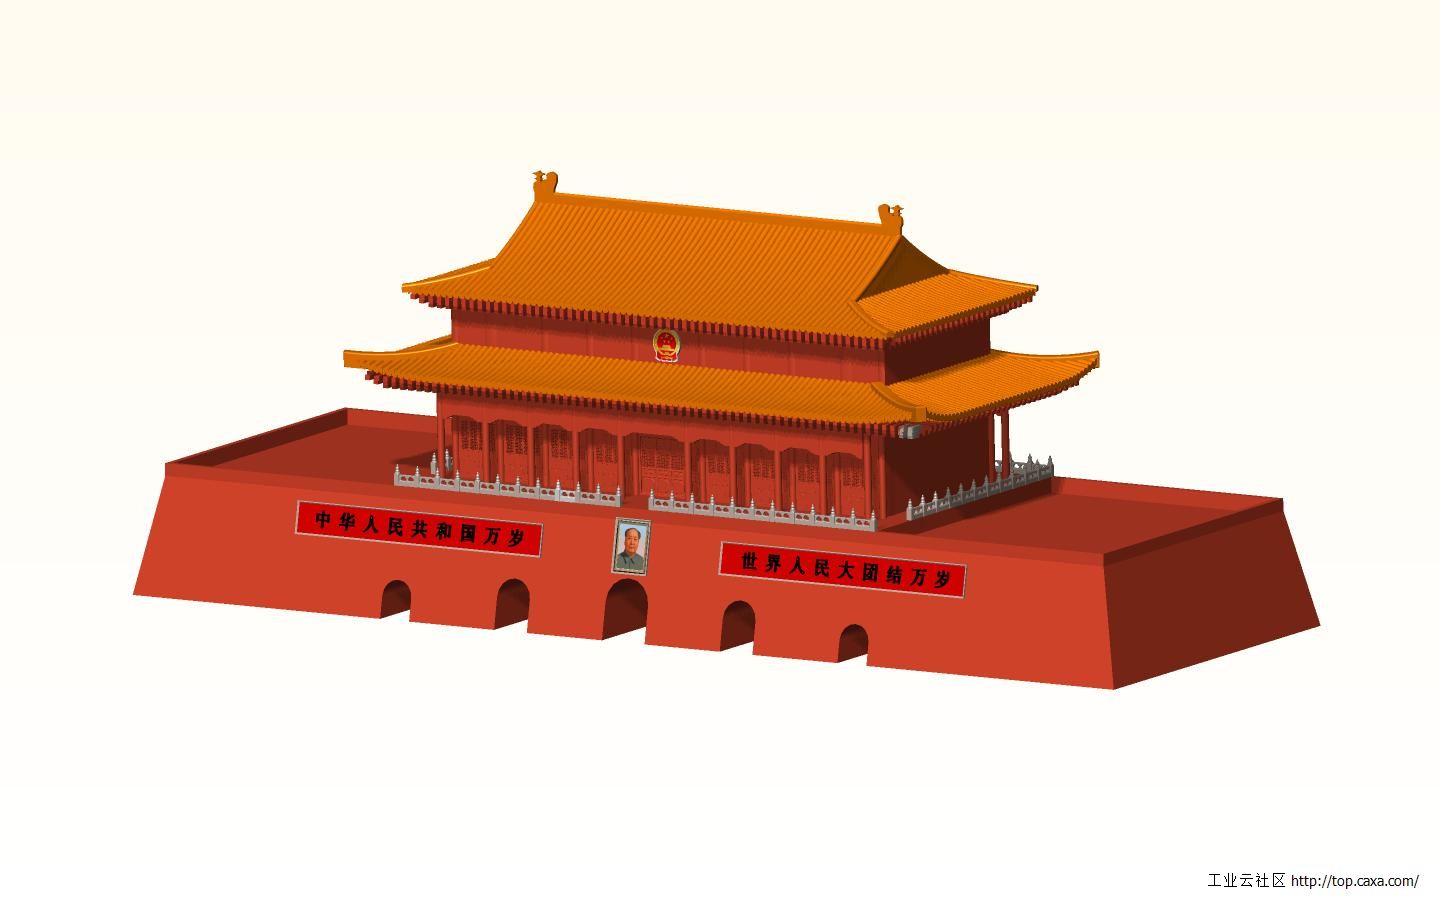 【携程攻略】北京天安门广场景点,天安门的大气和壮阔 ，不是一般建筑物能够比拟的。白天的天安门壮观…